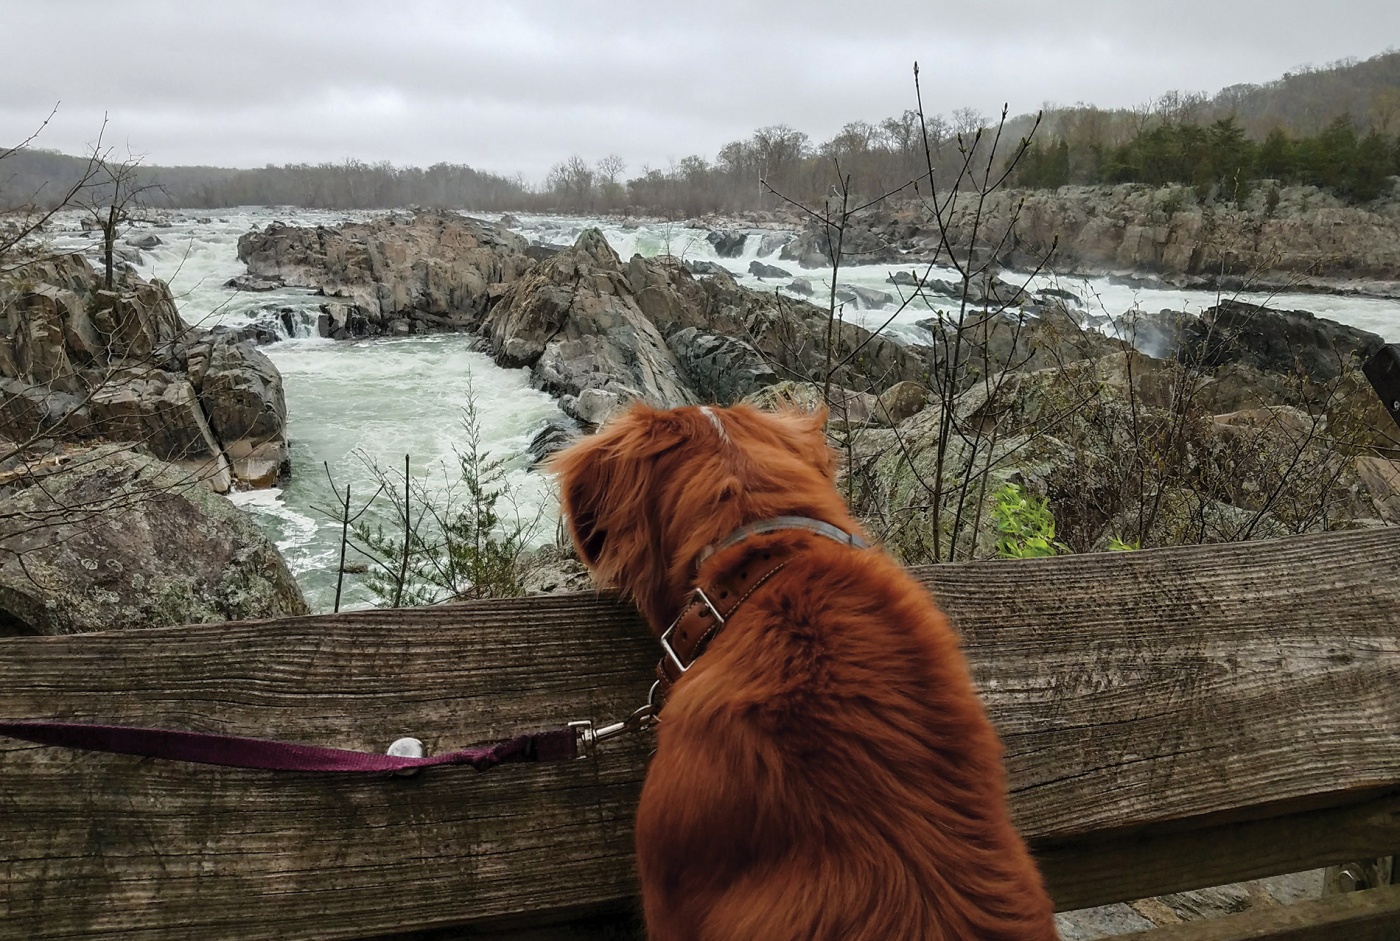 Image of Nathaniel Philbrick's dog Dora looking at waterfalls